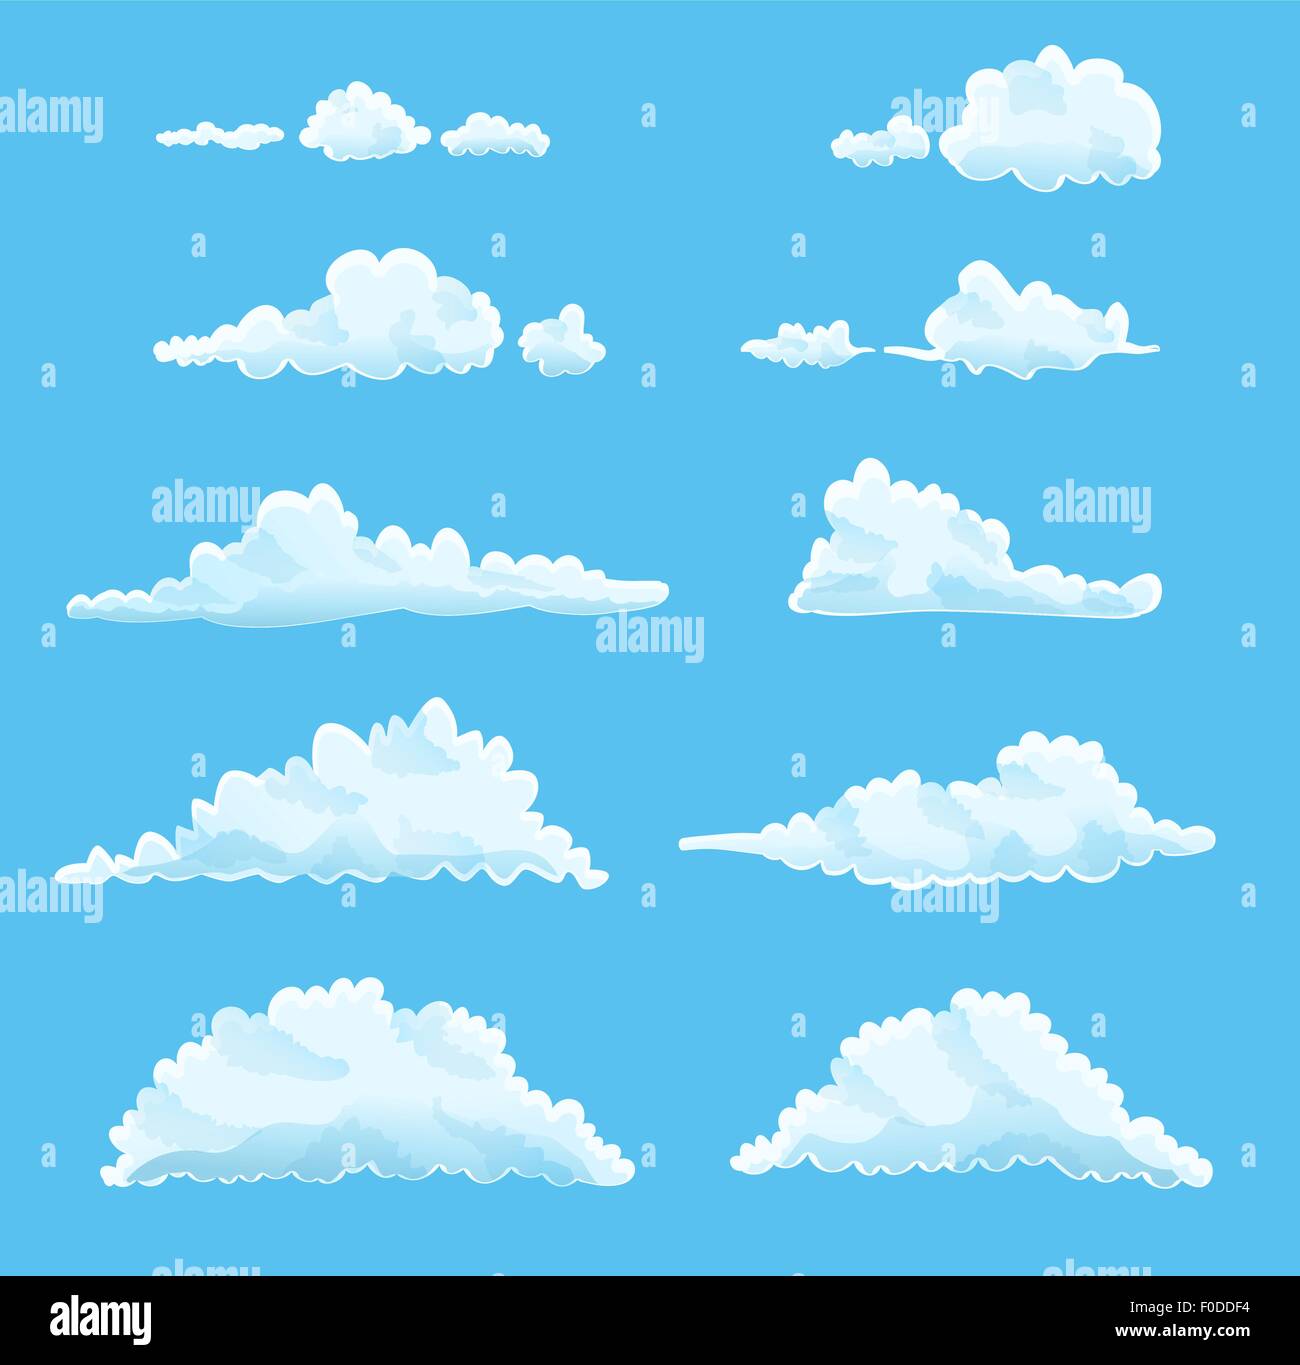 Satz von Cartoon Wolken auf blau. Vektor-illustration Stock Vektor